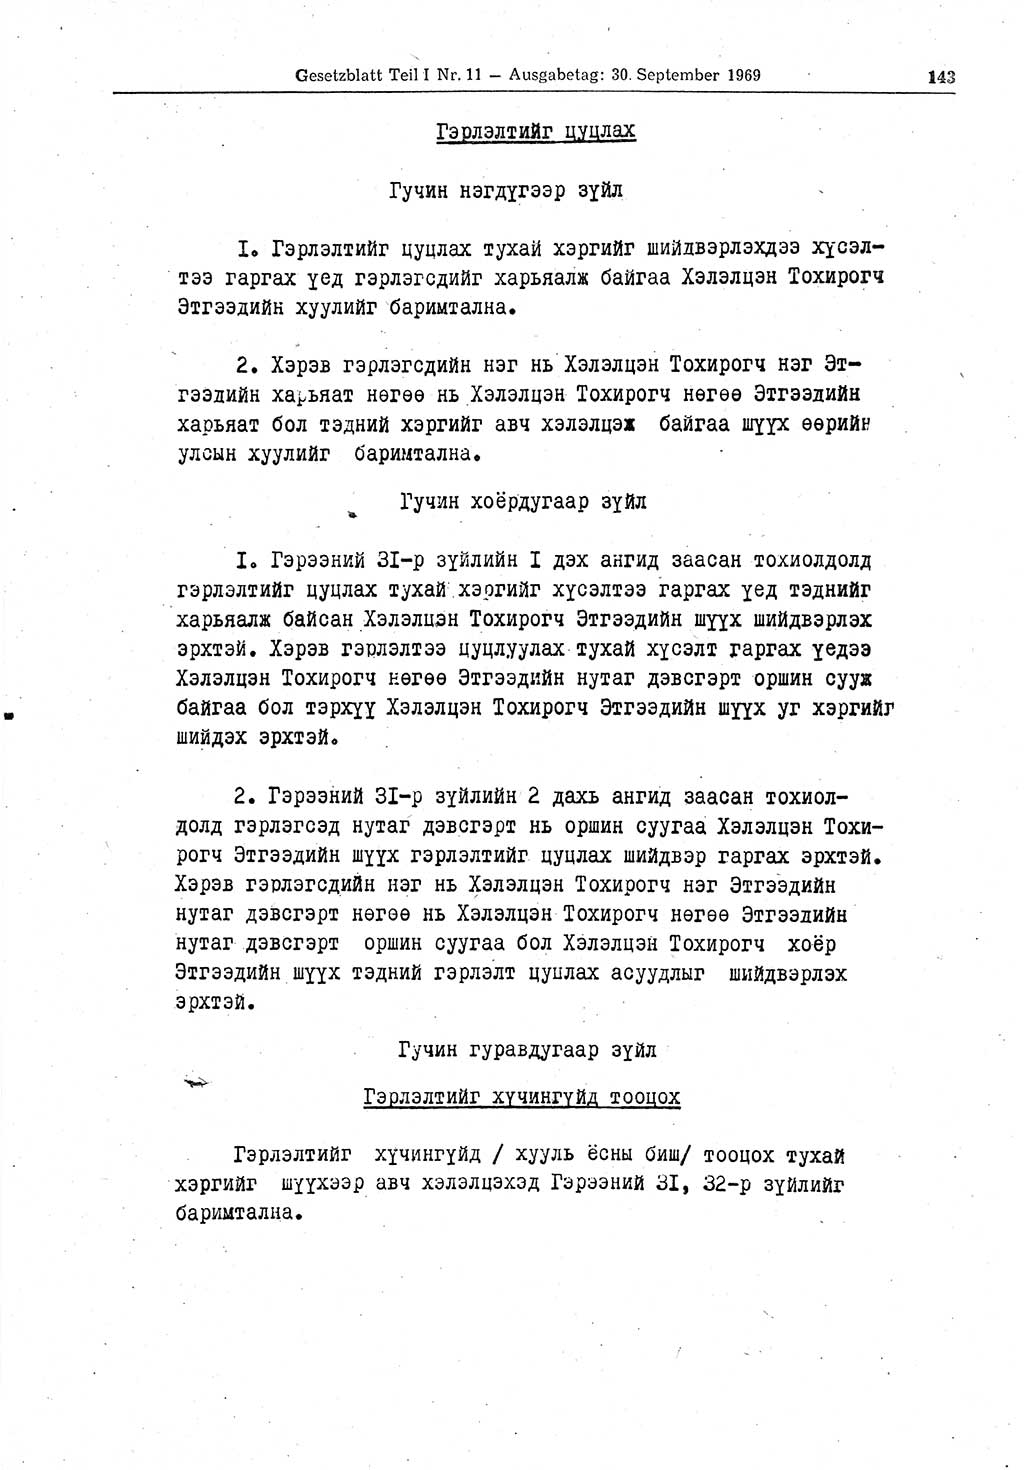 Gesetzblatt (GBl.) der Deutschen Demokratischen Republik (DDR) Teil Ⅰ 1969, Seite 143 (GBl. DDR Ⅰ 1969, S. 143)